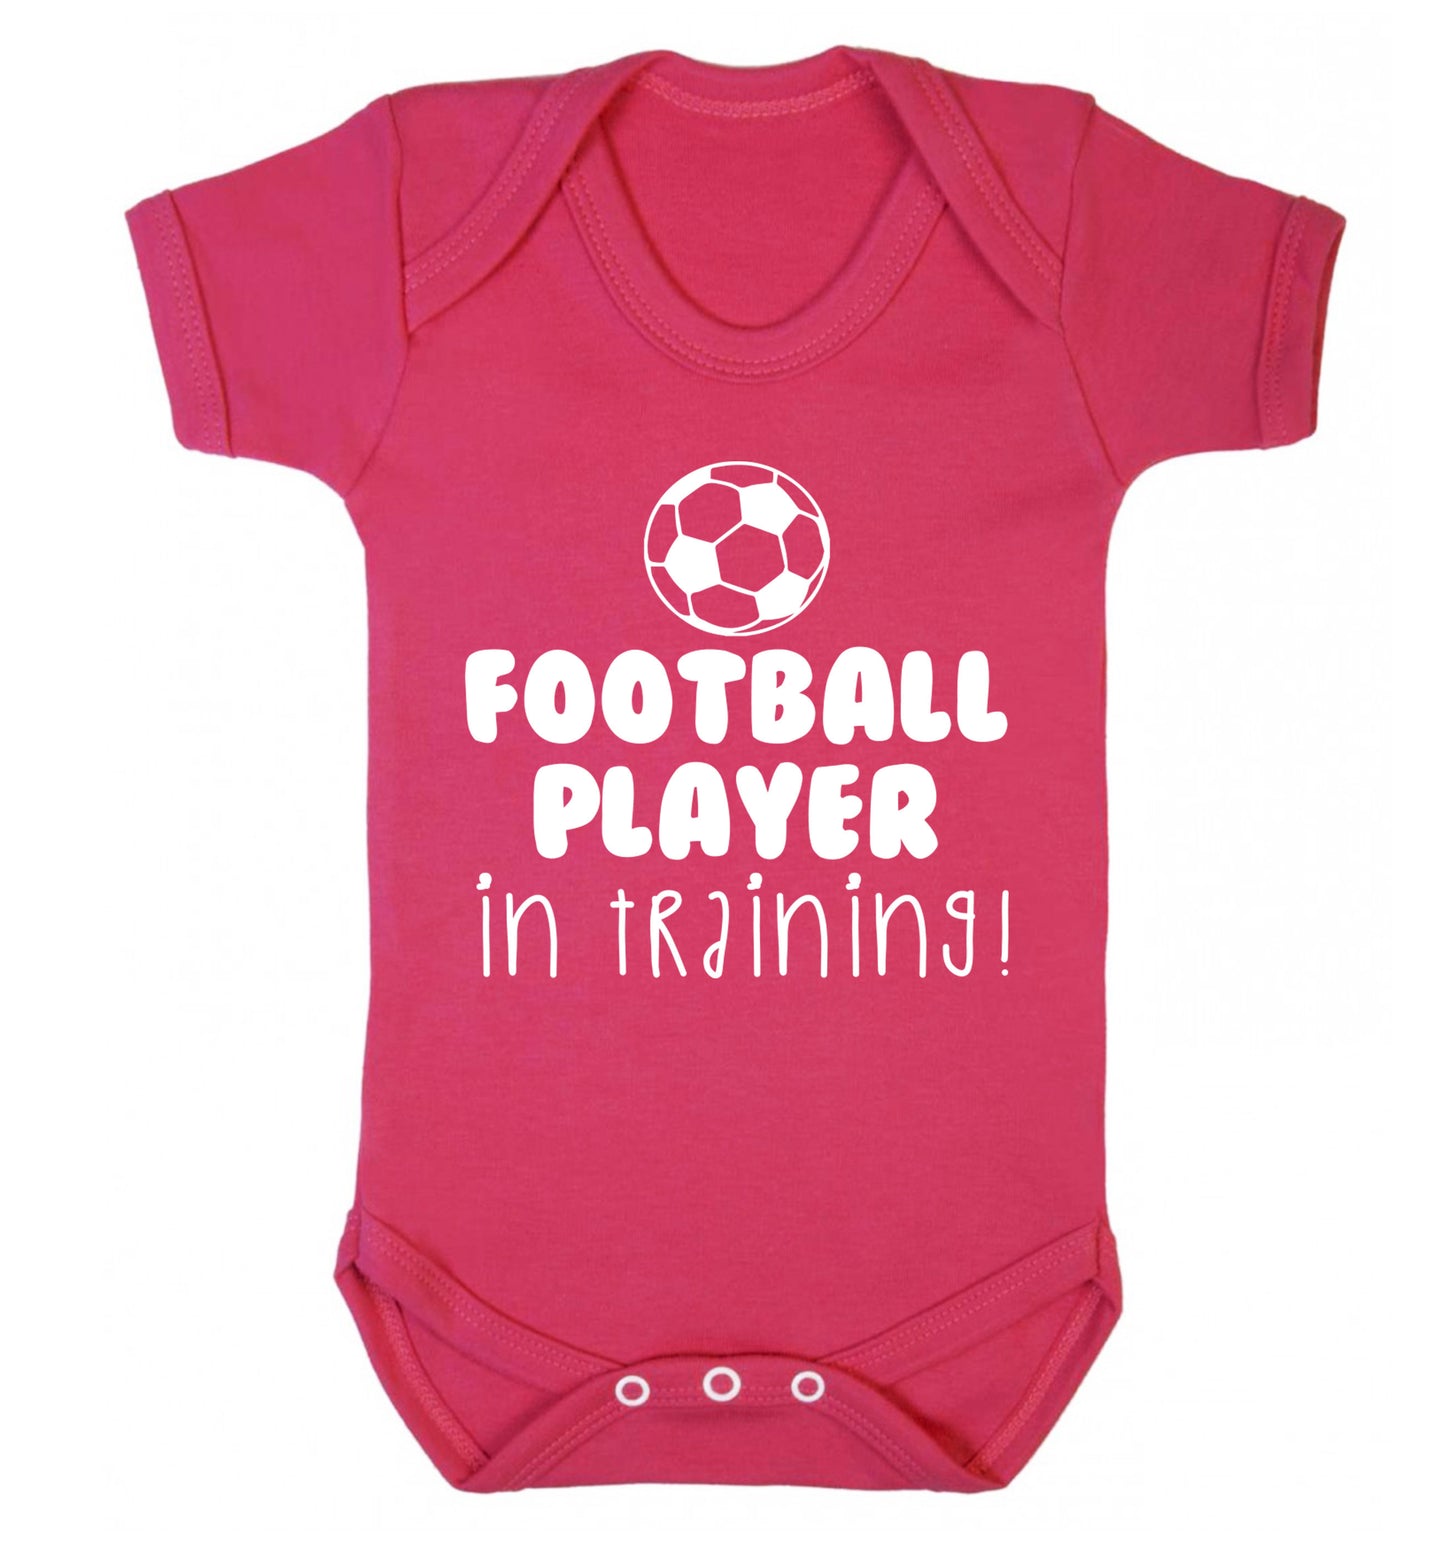 Football player in training Baby Vest dark pink 18-24 months